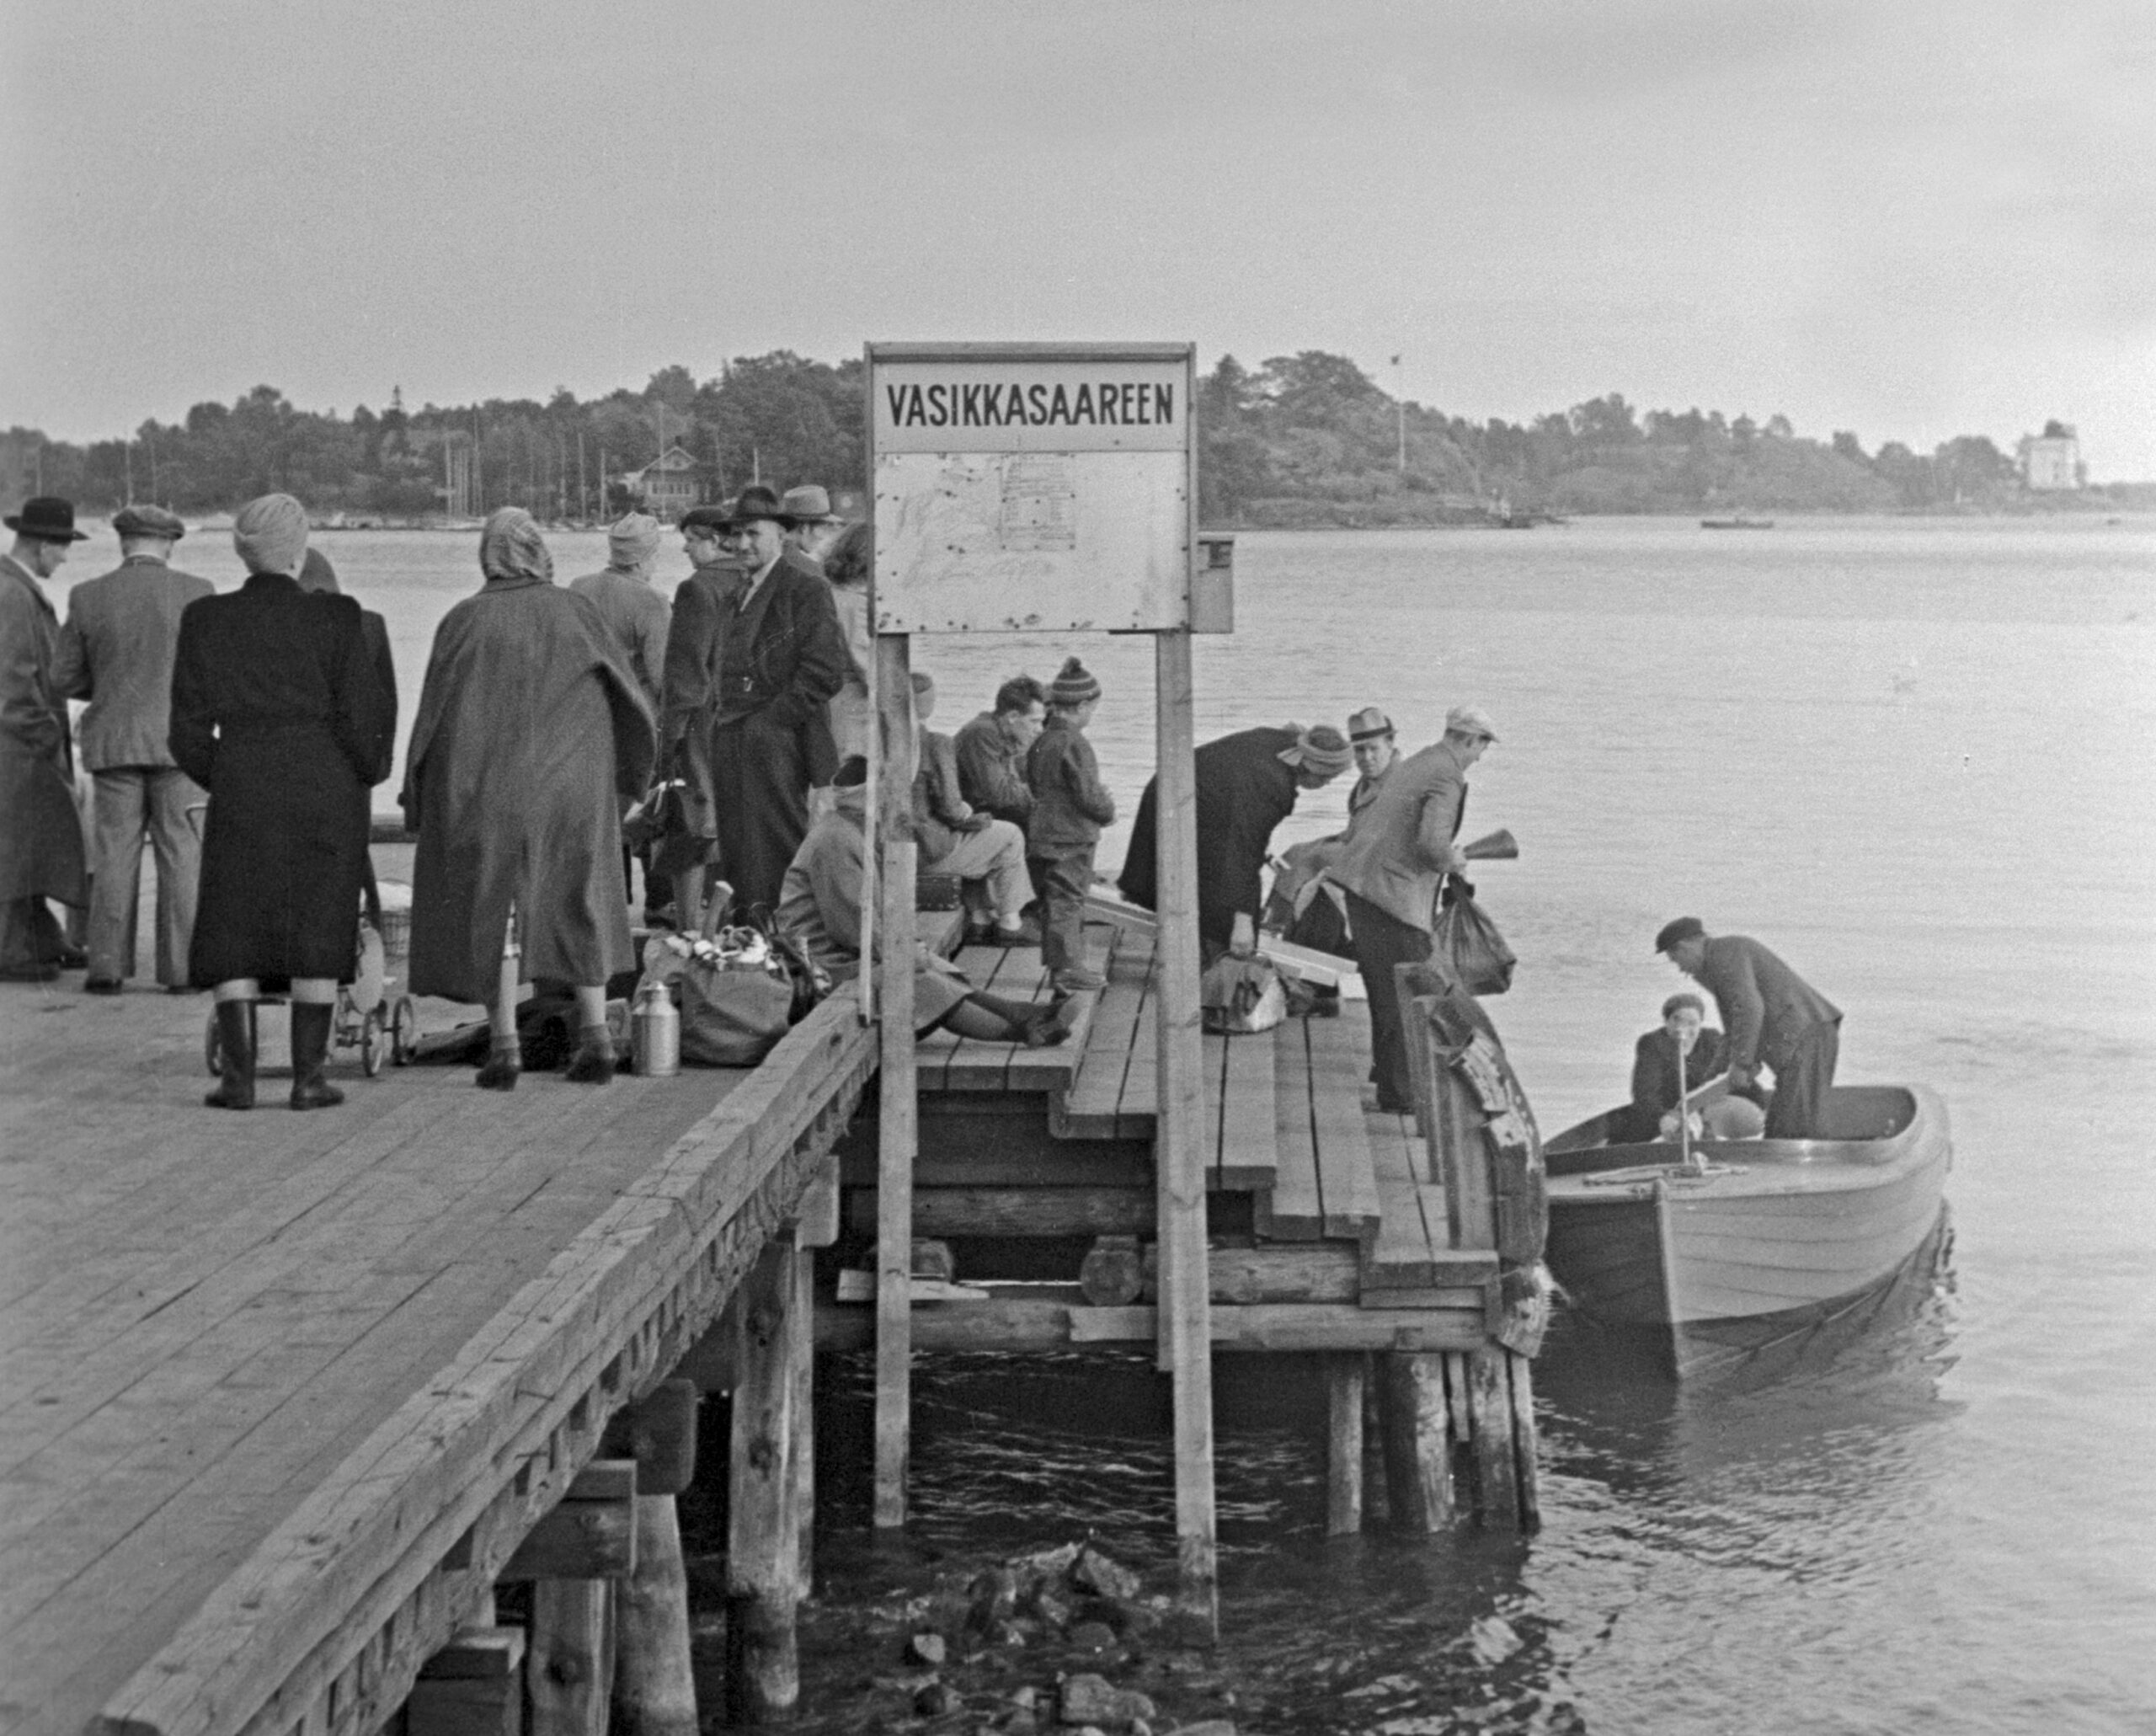 Laituri Sörnäisten rannassa, josta liikennöitiin Vasikkasaareen vuonna 1950. Kuva Eino Heinonen. Helsingin kaupunginmuseon kuva-arkisto.